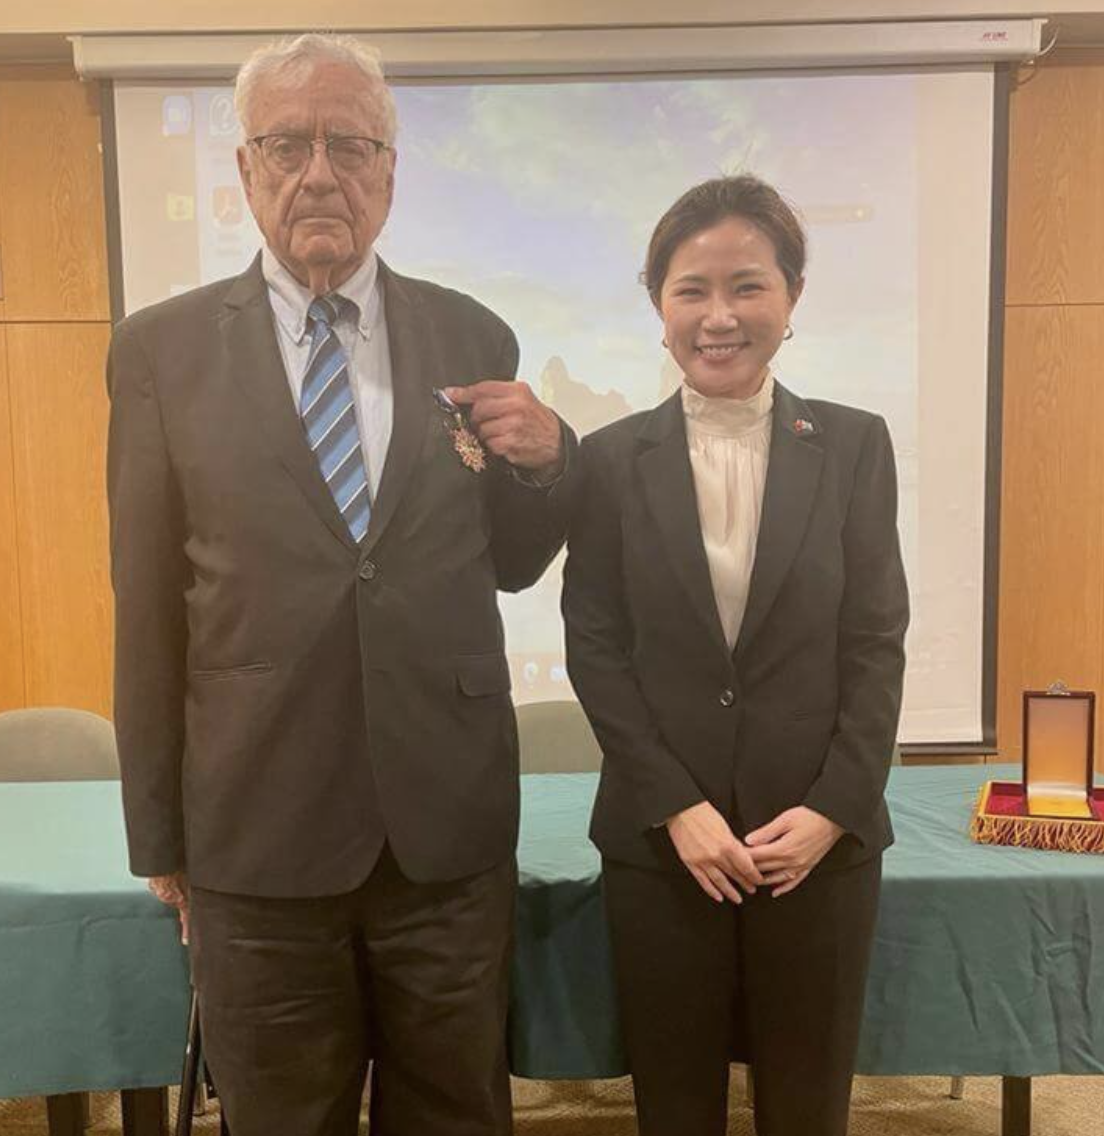 Ilmuwan Israel Menjadi Saksi Persahabatan Taiwan-Israel, Kemenlu Beri Penghargaan